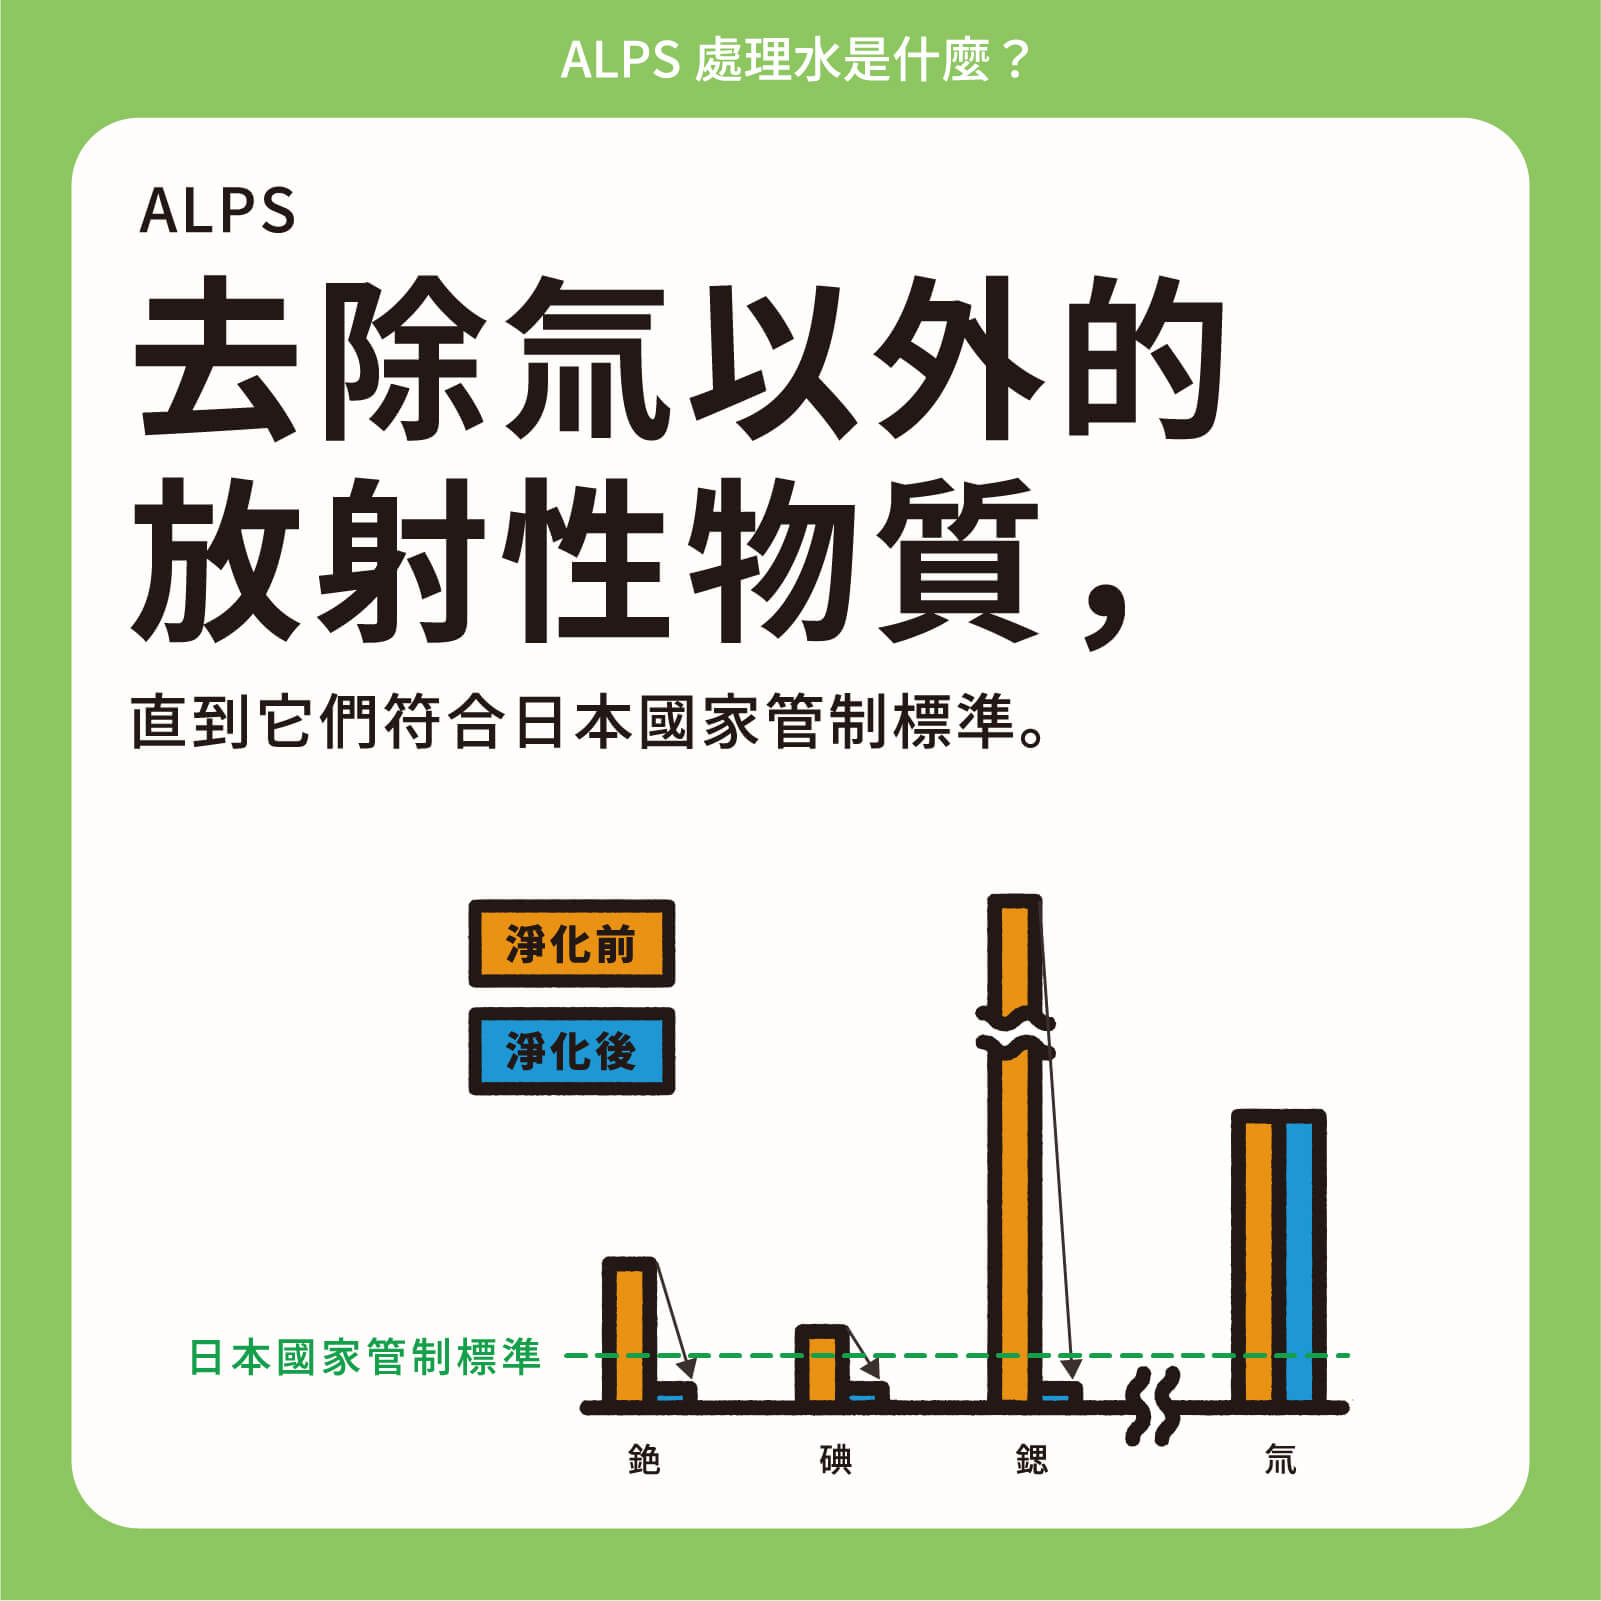 ALPS去除氚以外的放射性物質，直到它們符合日本國家管制標準。